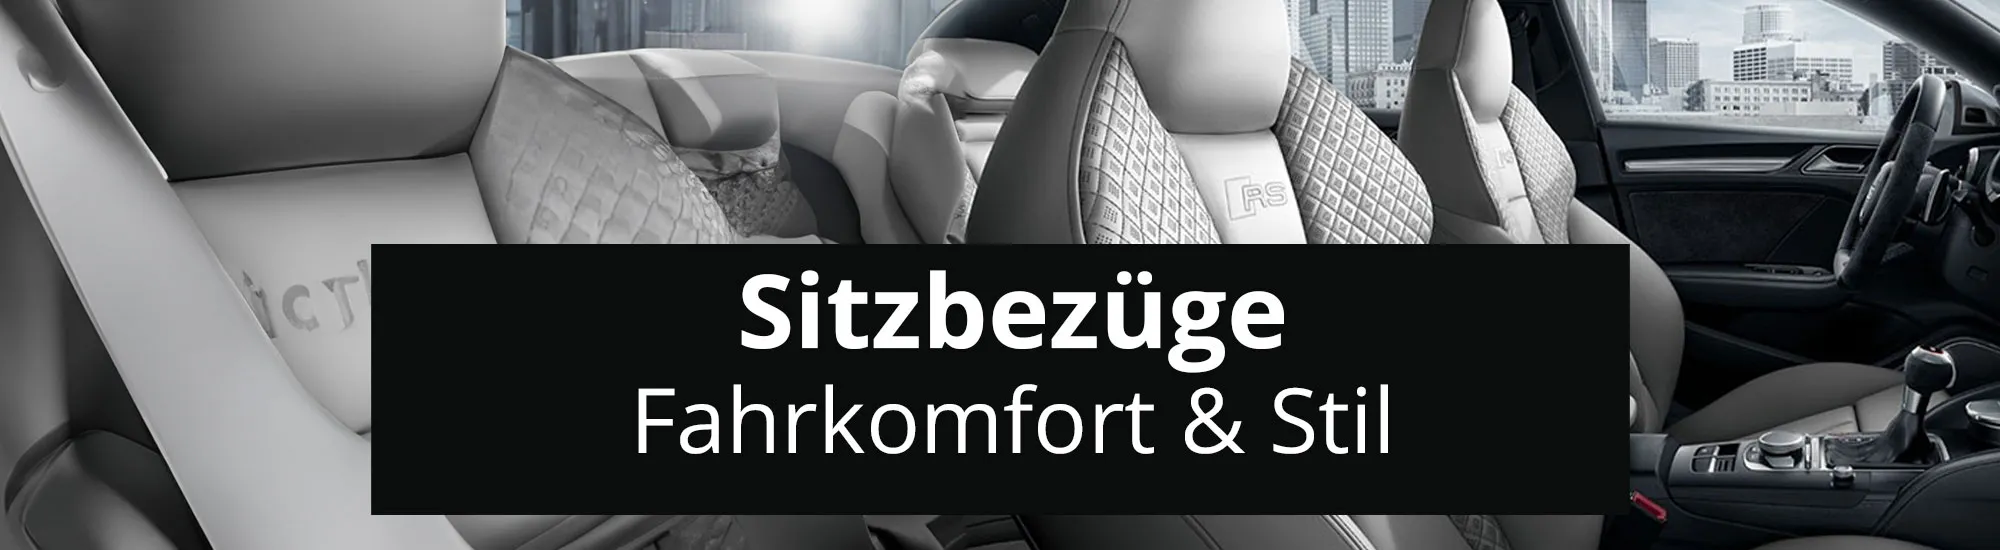 Sitzbezüge für Mercedes Benz V-Klasse online kaufen - (D/G)